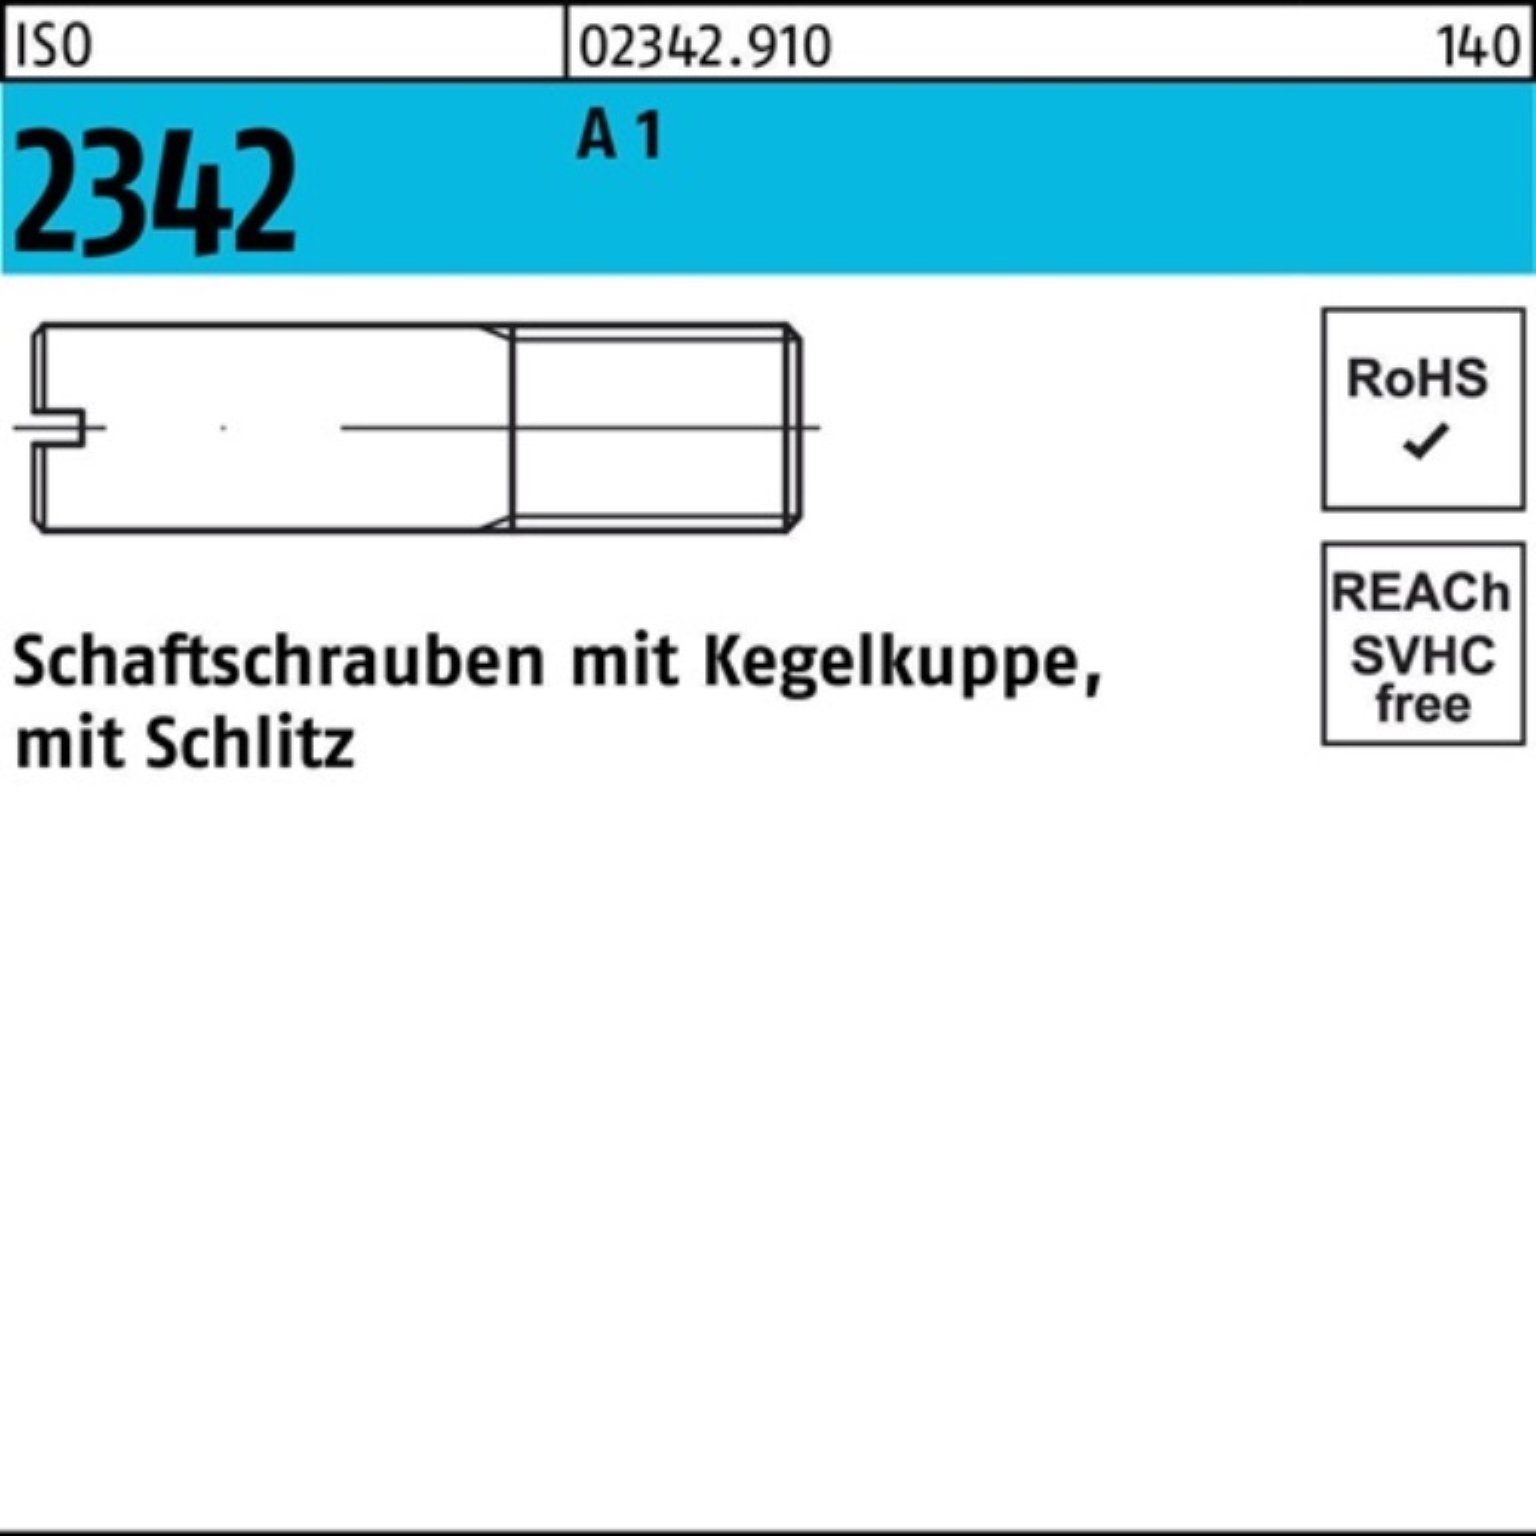 Reyher Schraube 100er Pack Schaftschraube Kegelkuppe/Schlitz 100 S 2342 ISO A 20 1 M6x